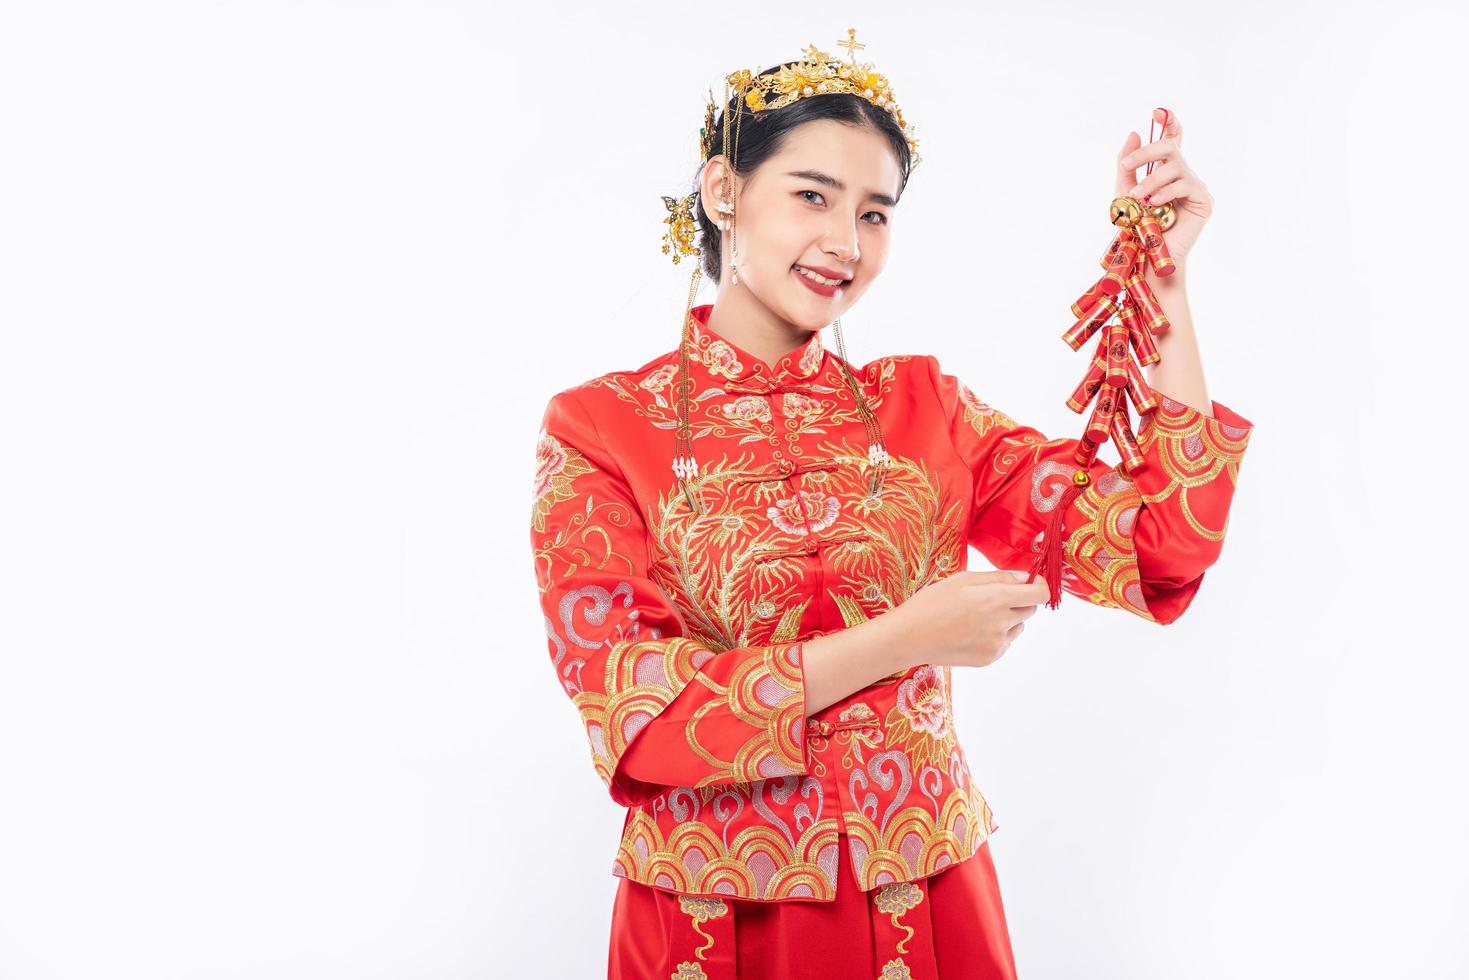 femme porter un costume cheongsam sourire pour obtenir des pétards du patron dans le nouvel an chinois photo